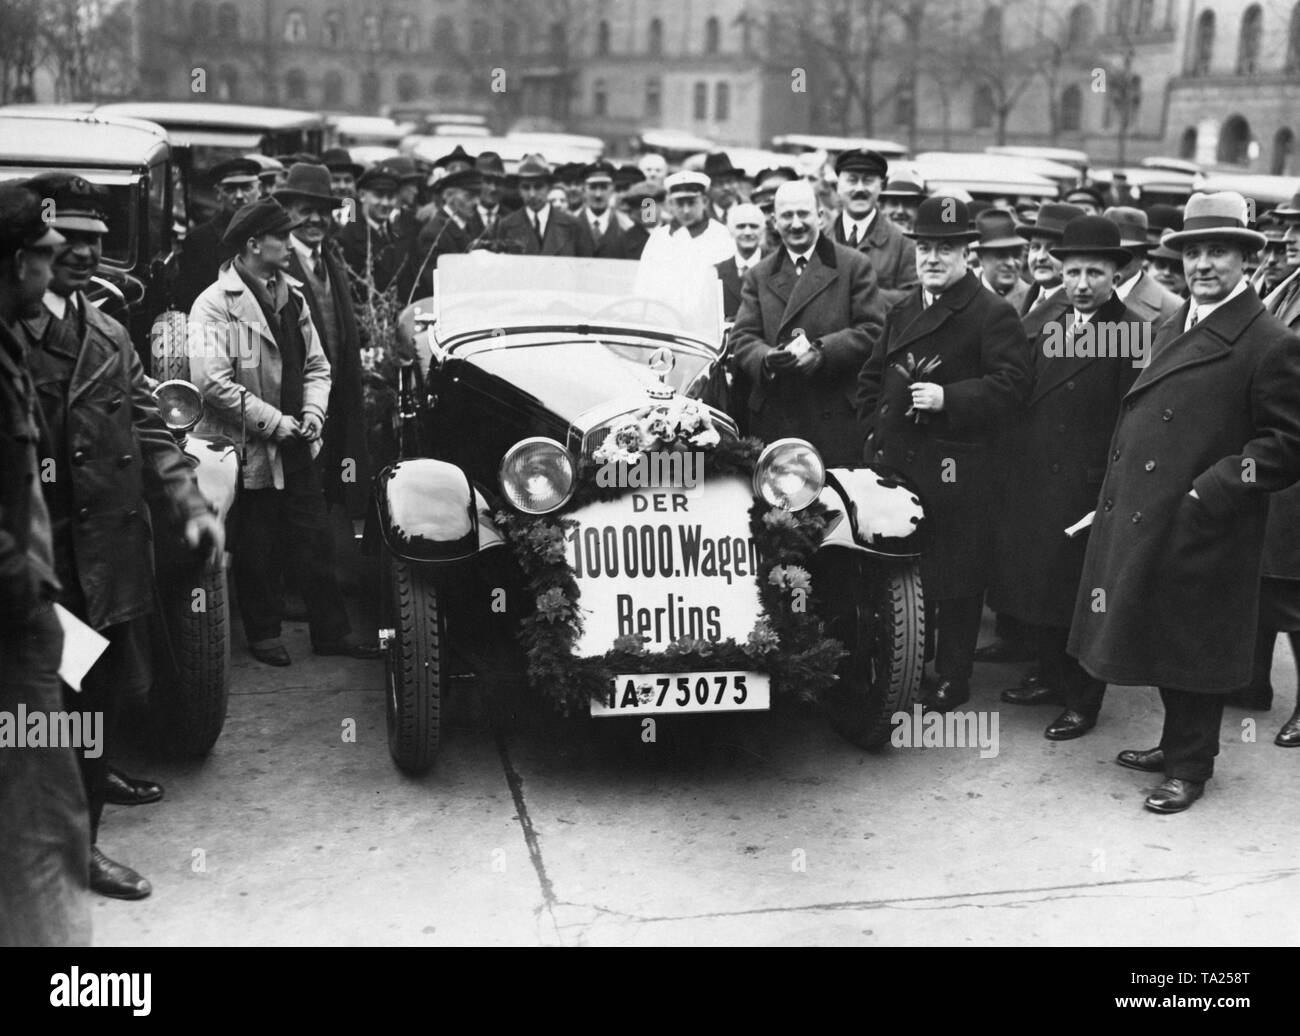 Nel 1930 una Mercedes Cabriolet diventa il 100.000° veicolo immatricolato al Berliner Kraftverkehrsamt (Berlino autoveicolo autorità di registrazione). Foto Stock